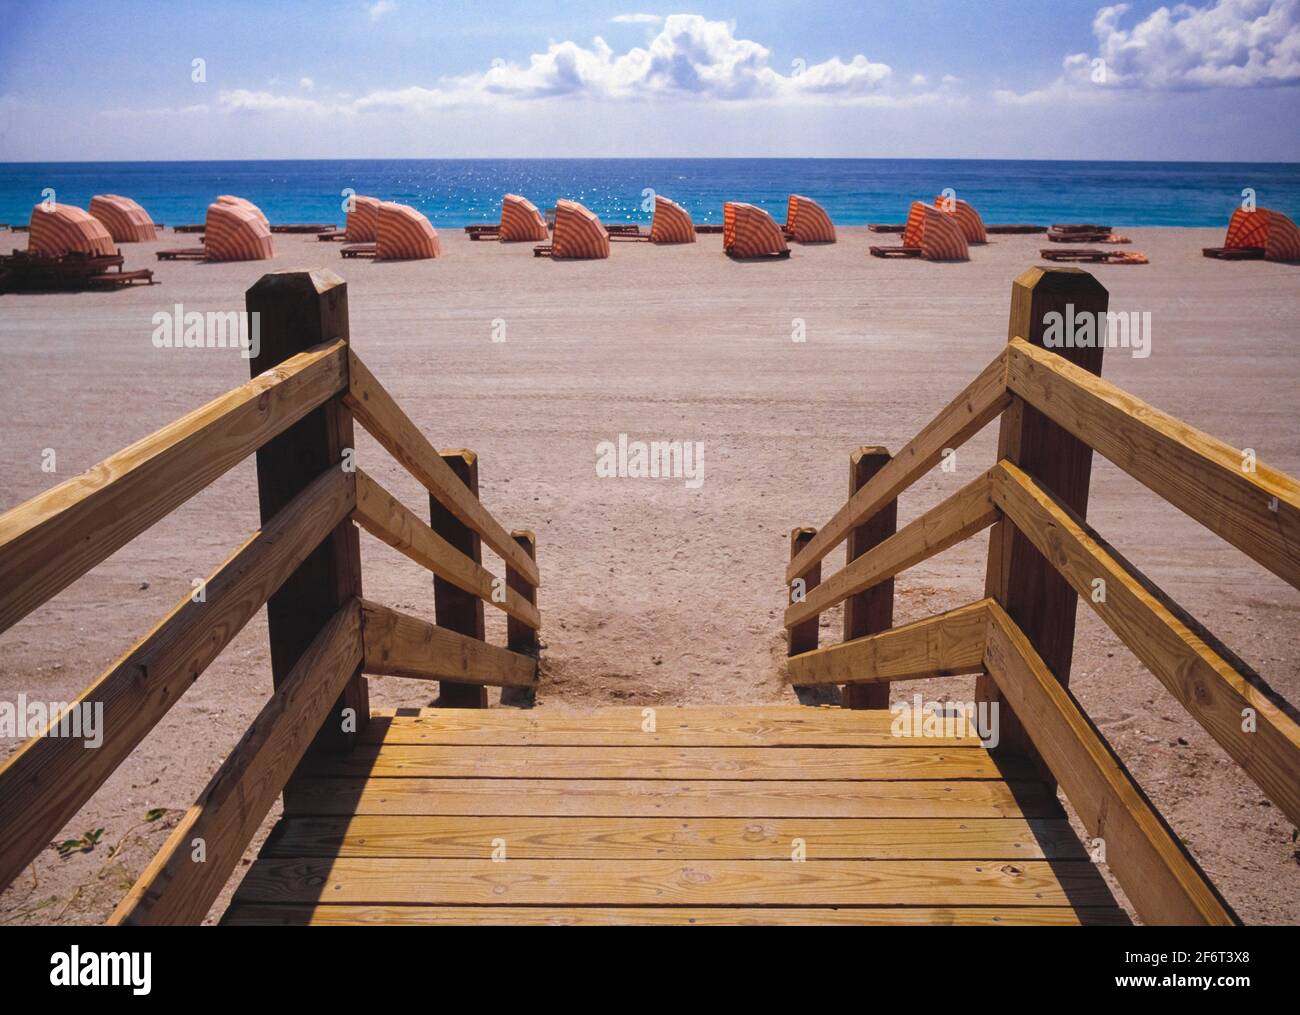 Miami Beach. Florida. USA. Stock Photo